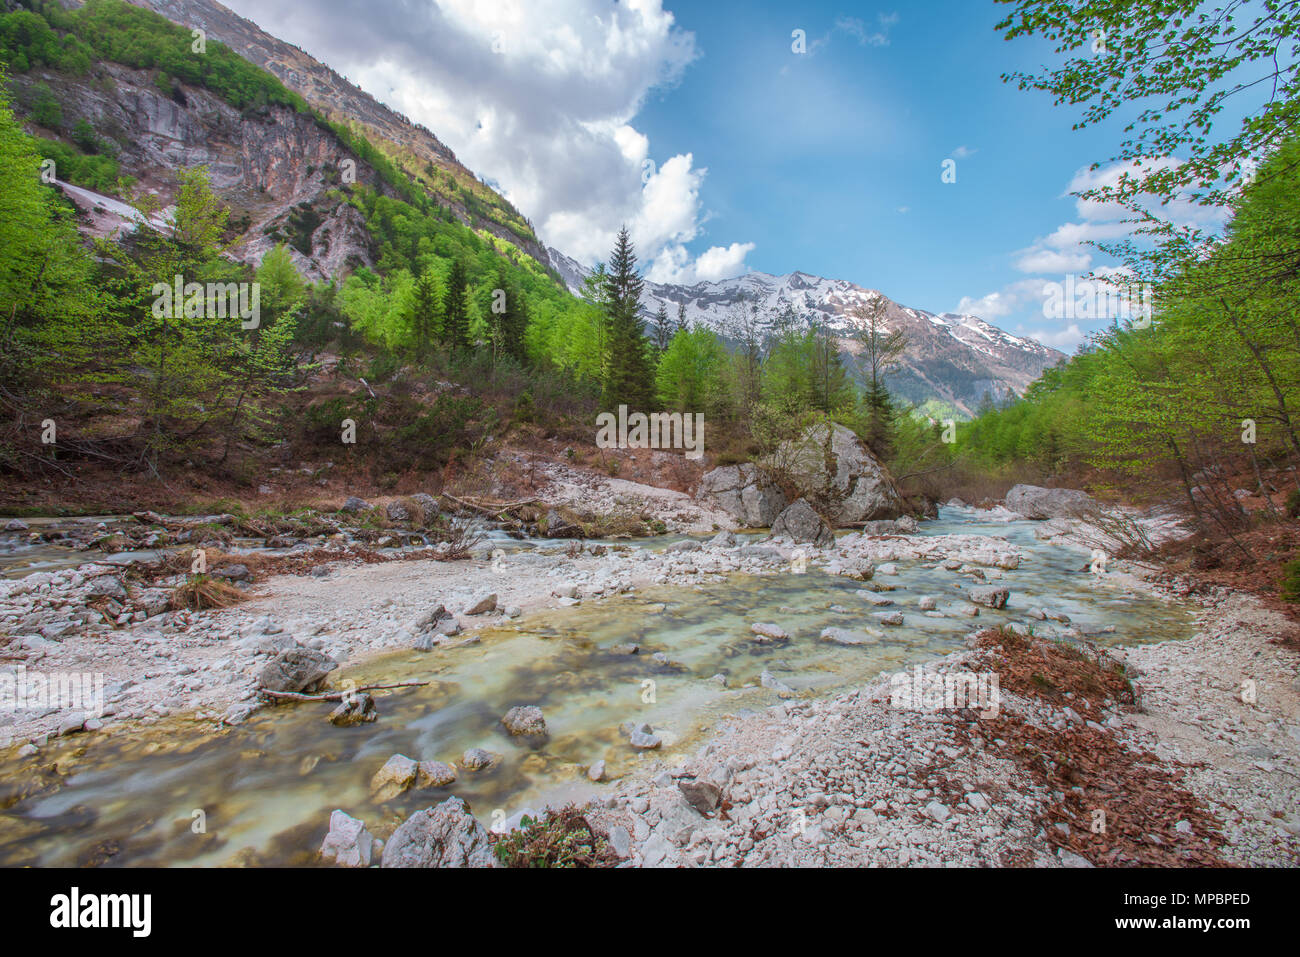 Isonzo - Soca fondo valle. - Glaciale alimentato, crystal clear fiume che scorre verso il basso attraverso le rocce e massi, circondato da fitti boschi e montagne. Foto Stock